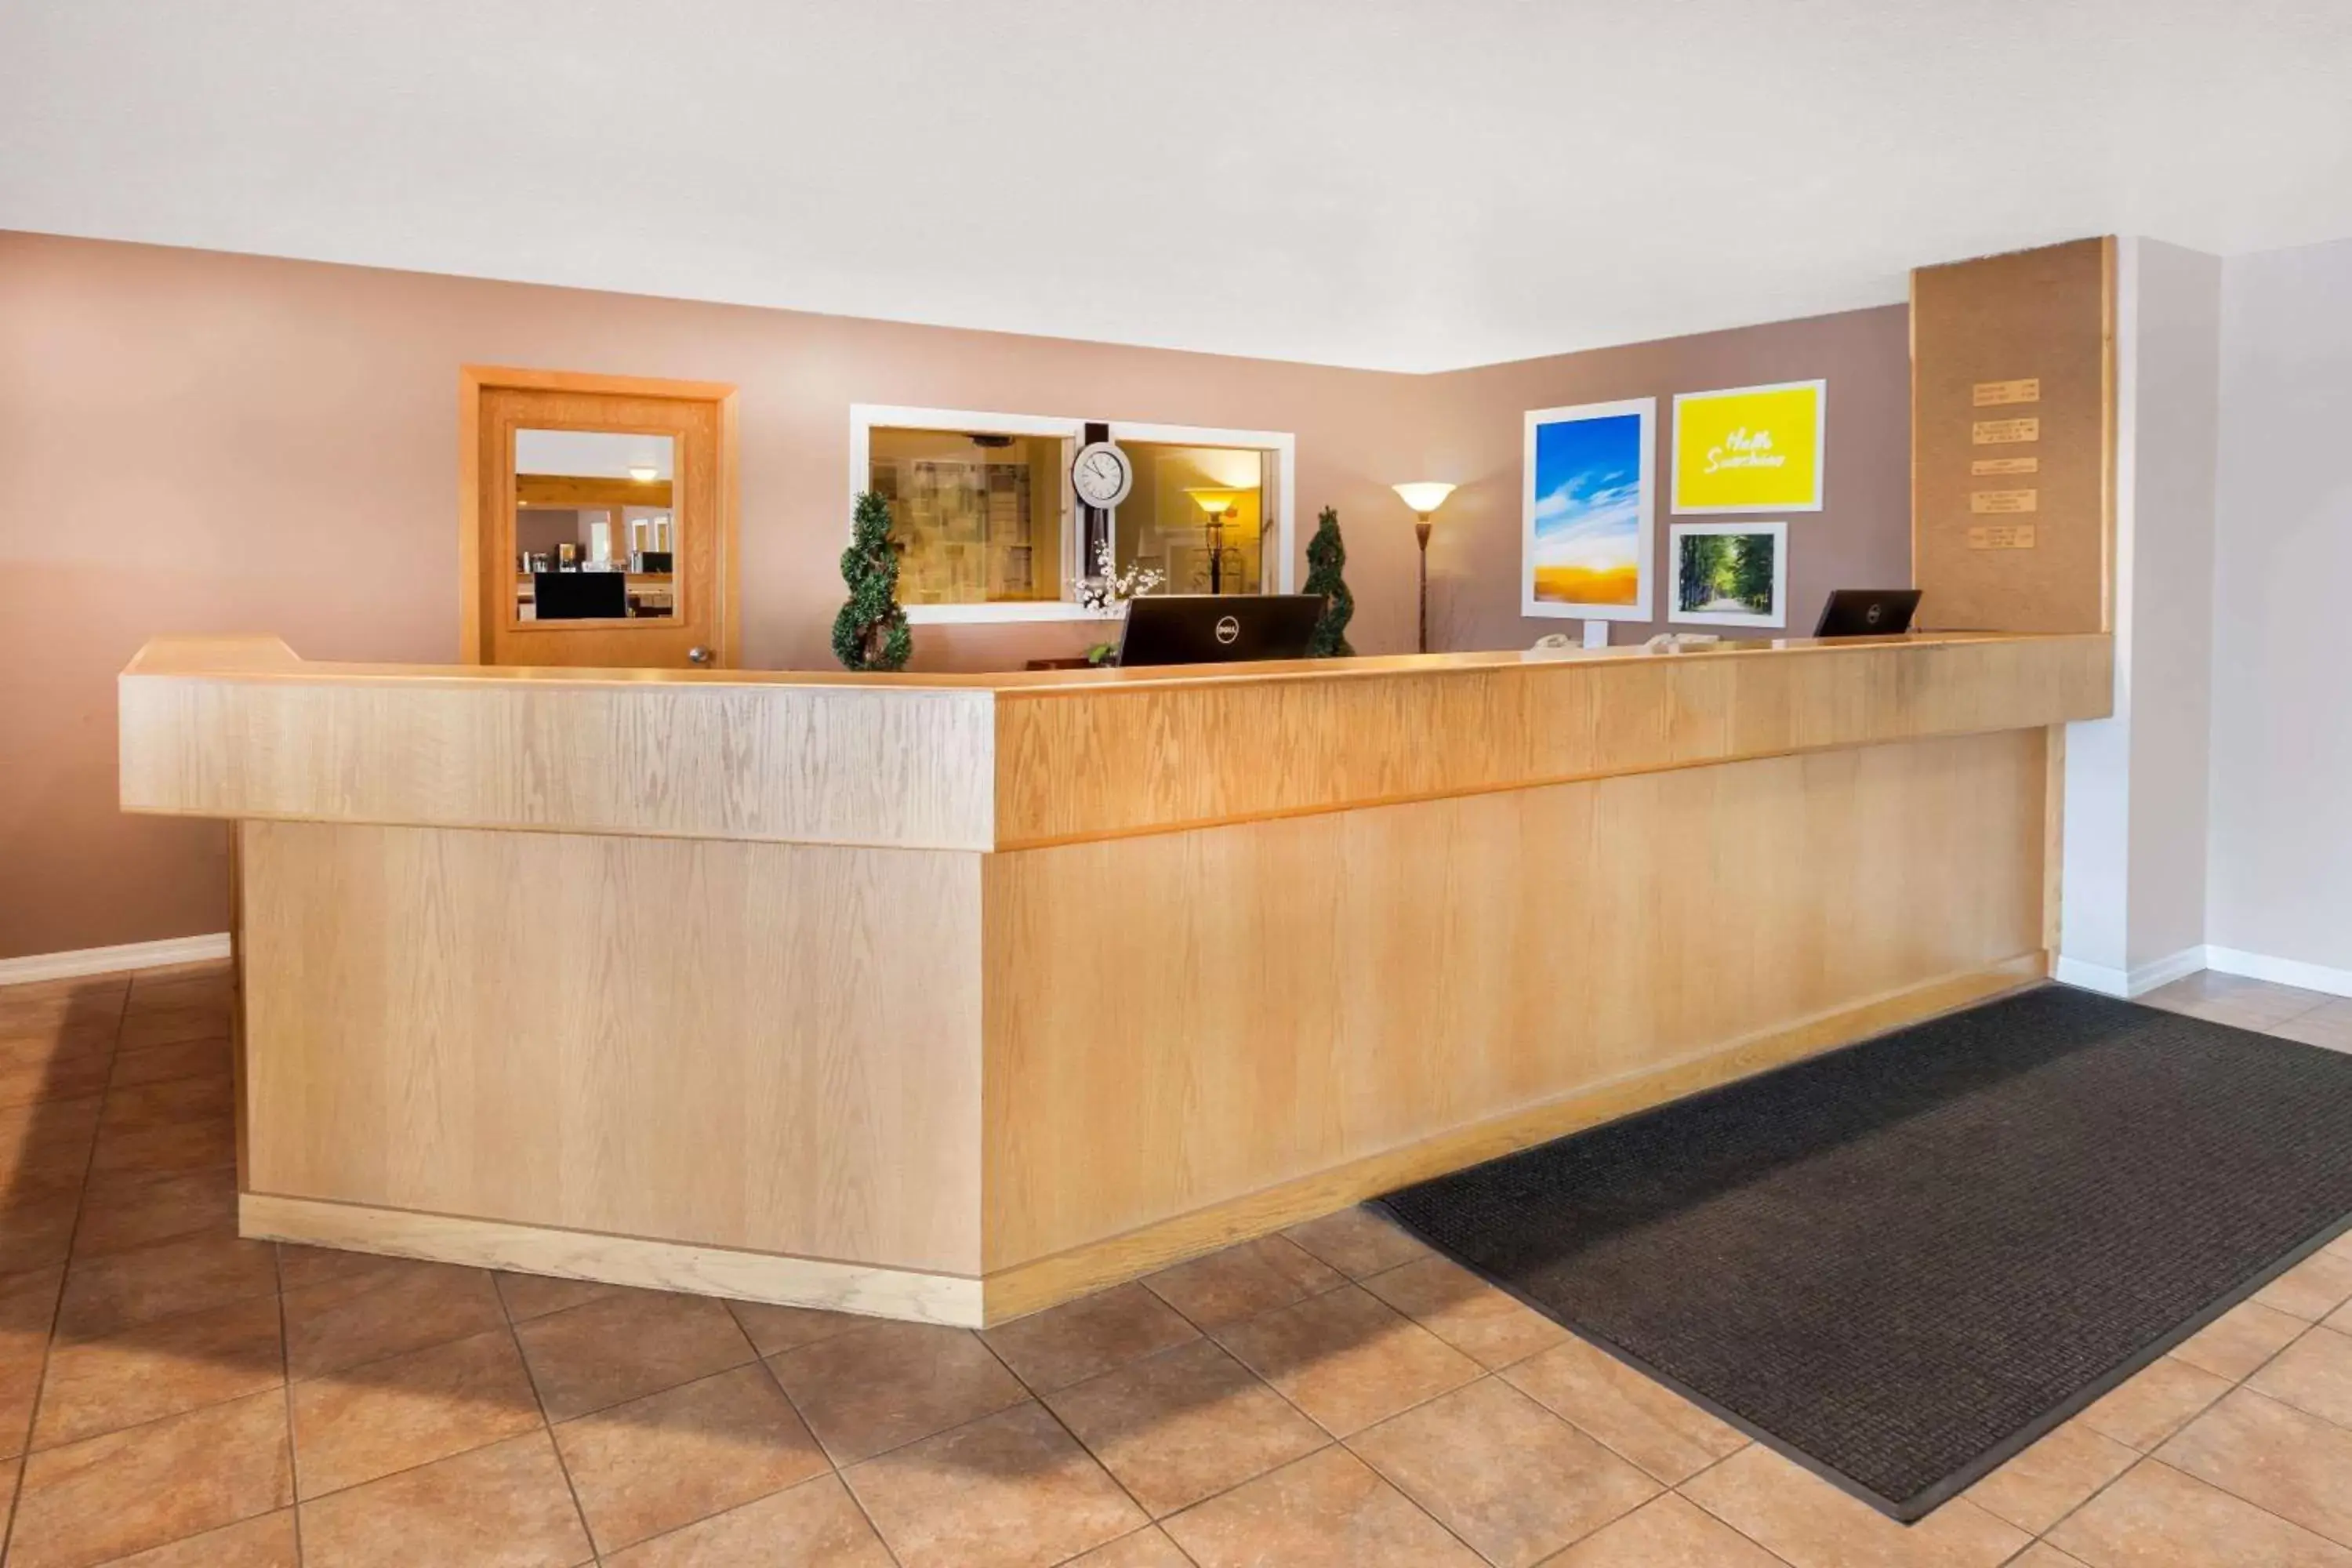 Lobby or reception, Lobby/Reception in Baymont by Wyndham Manistee